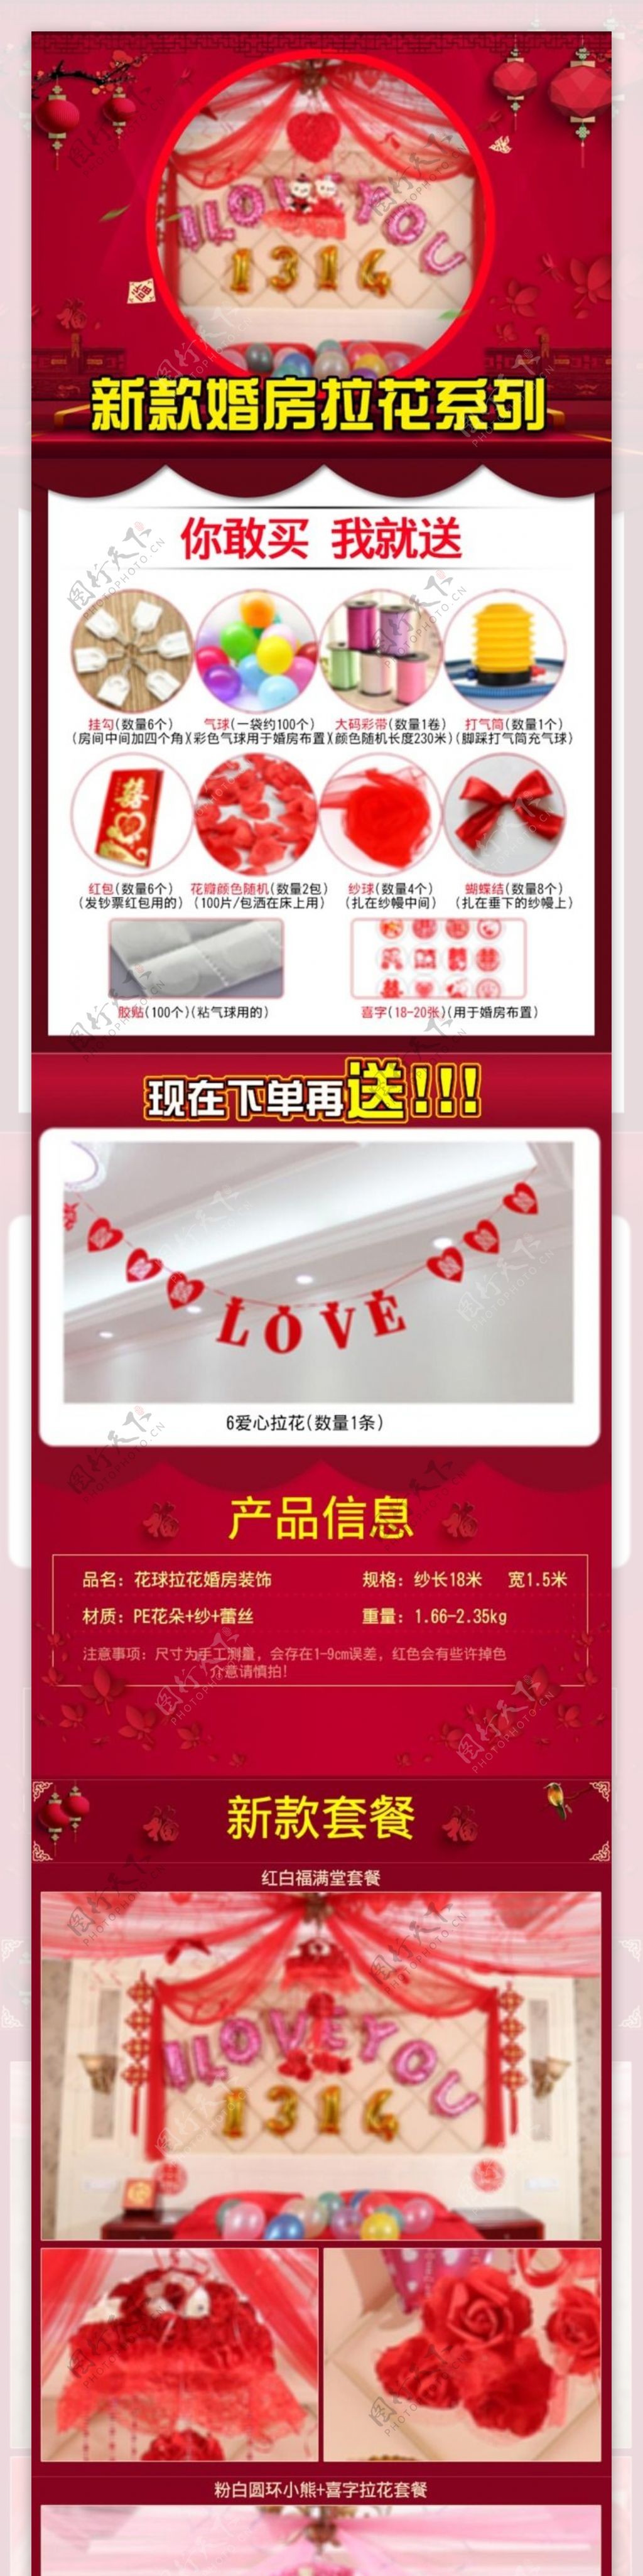 中国风花球套餐婚庆用品详情页模版